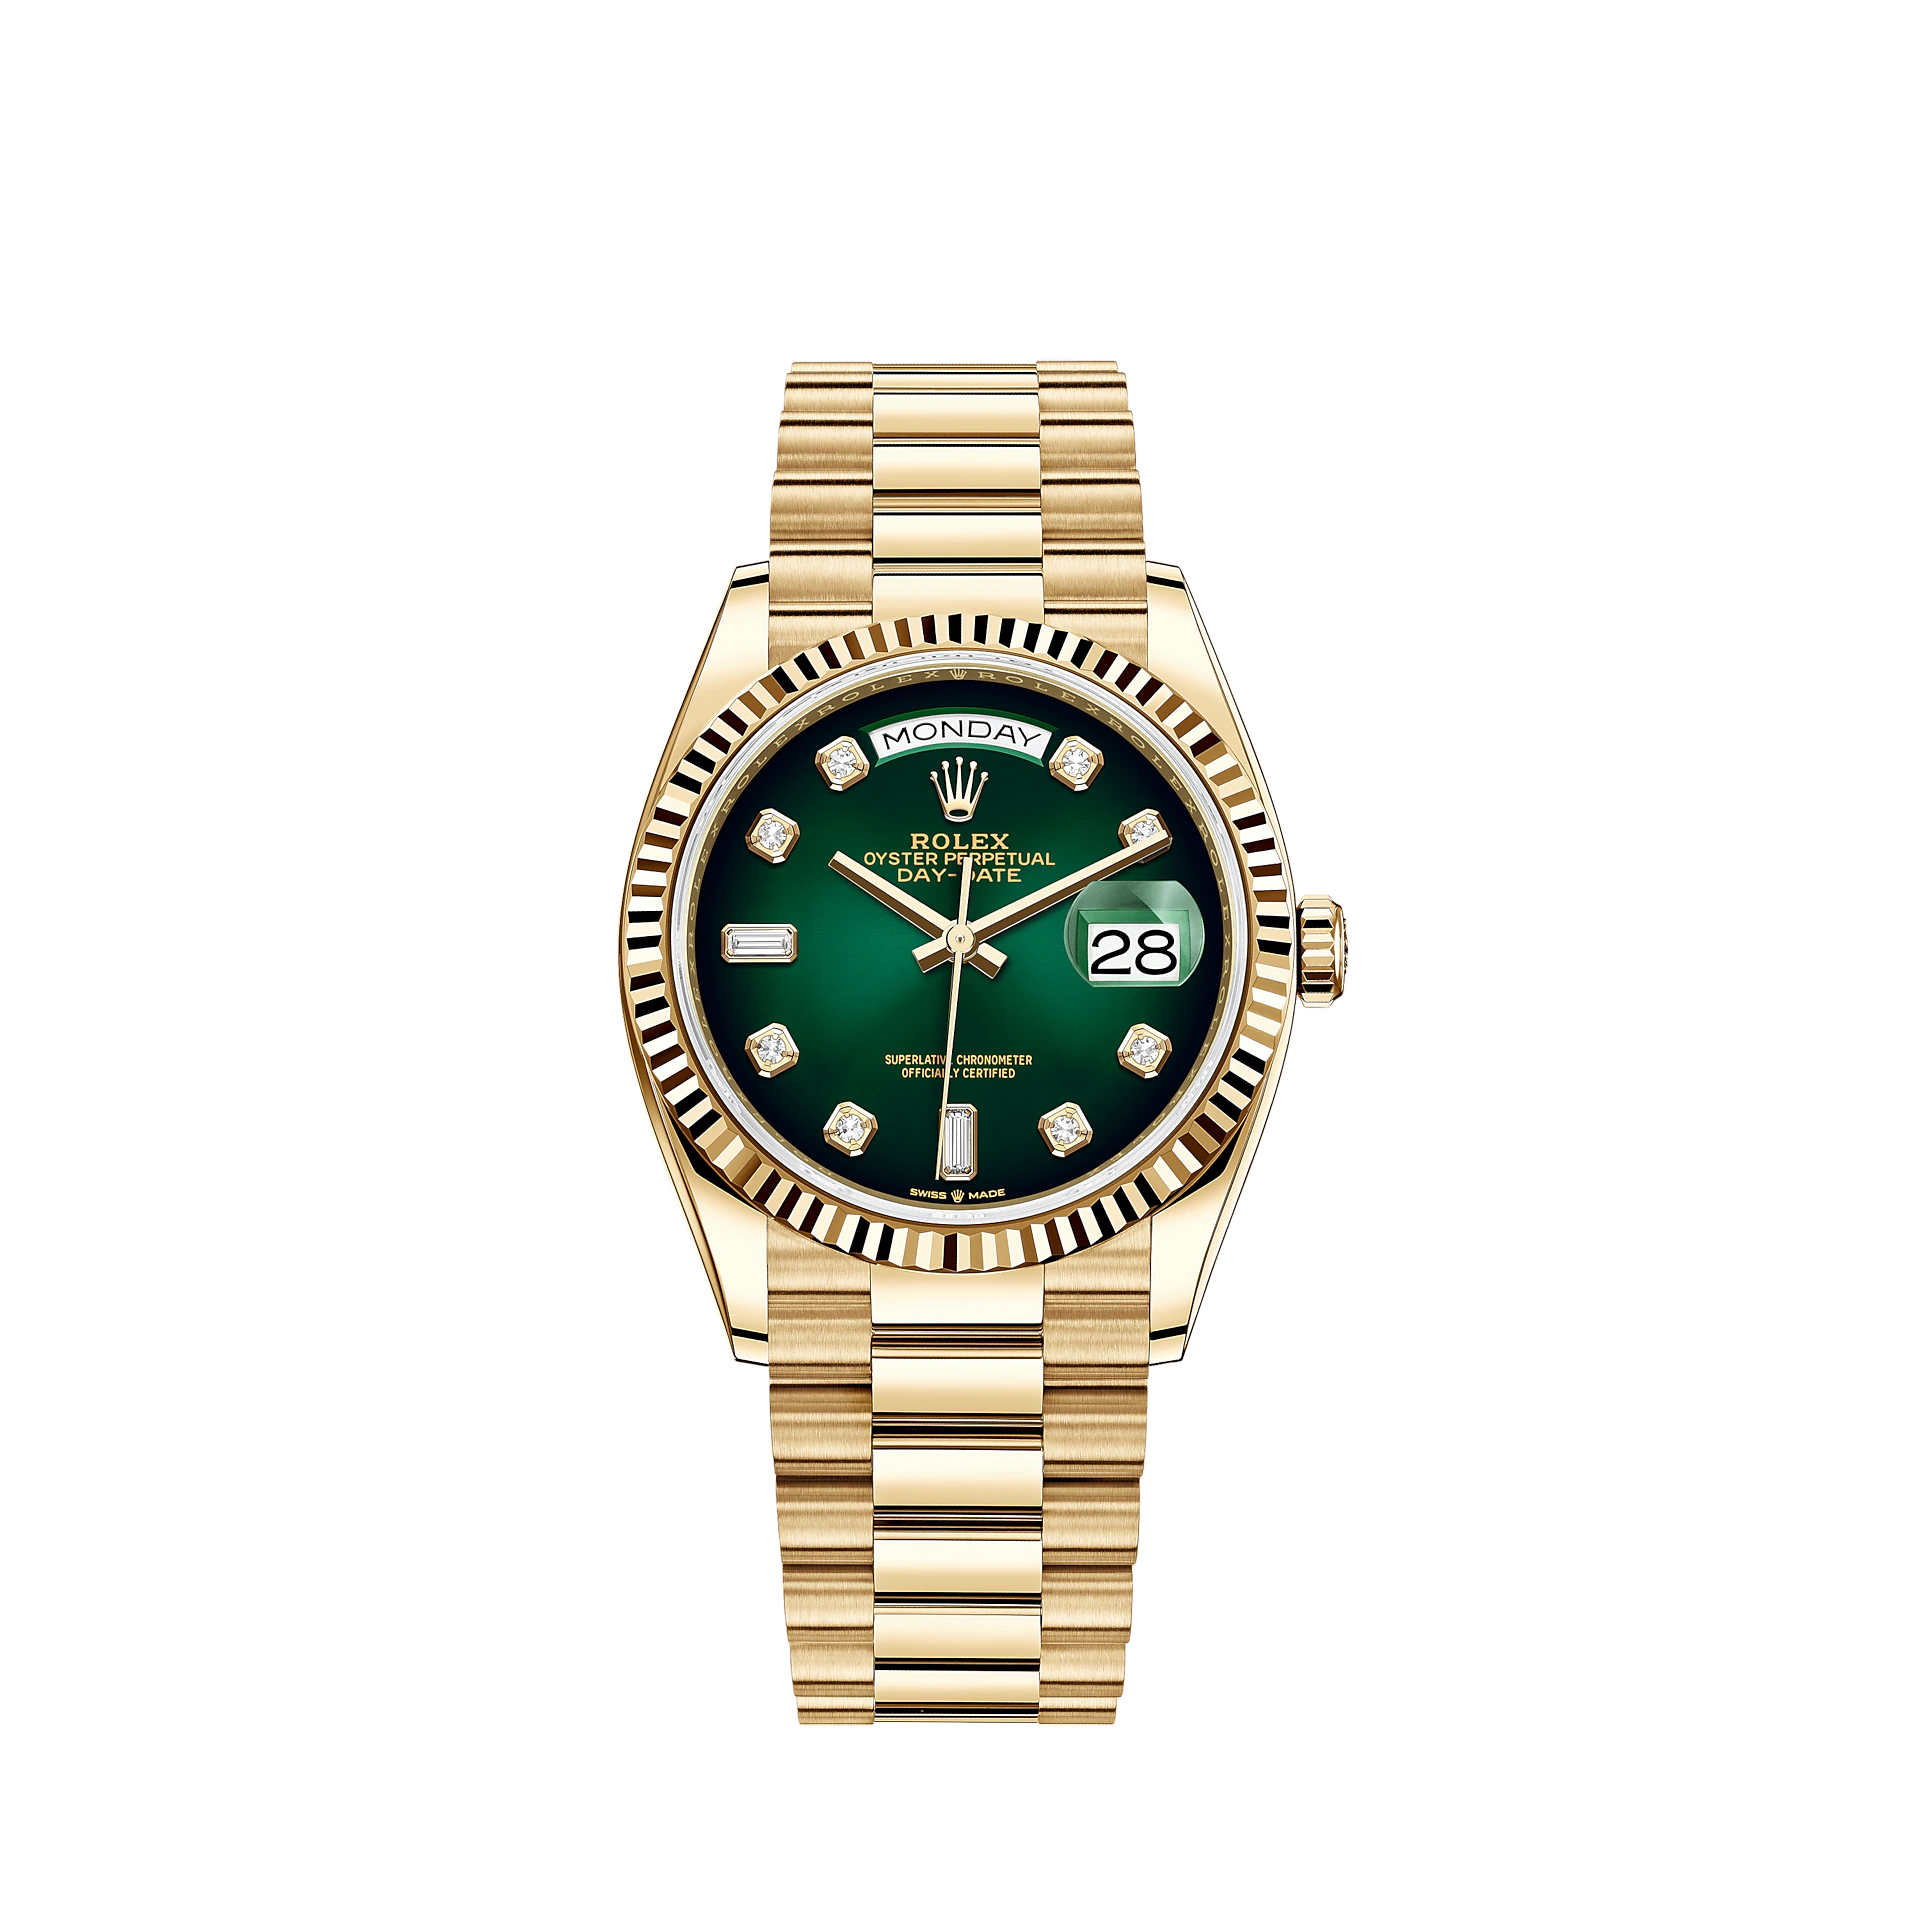 Best Rolex Watches for Women